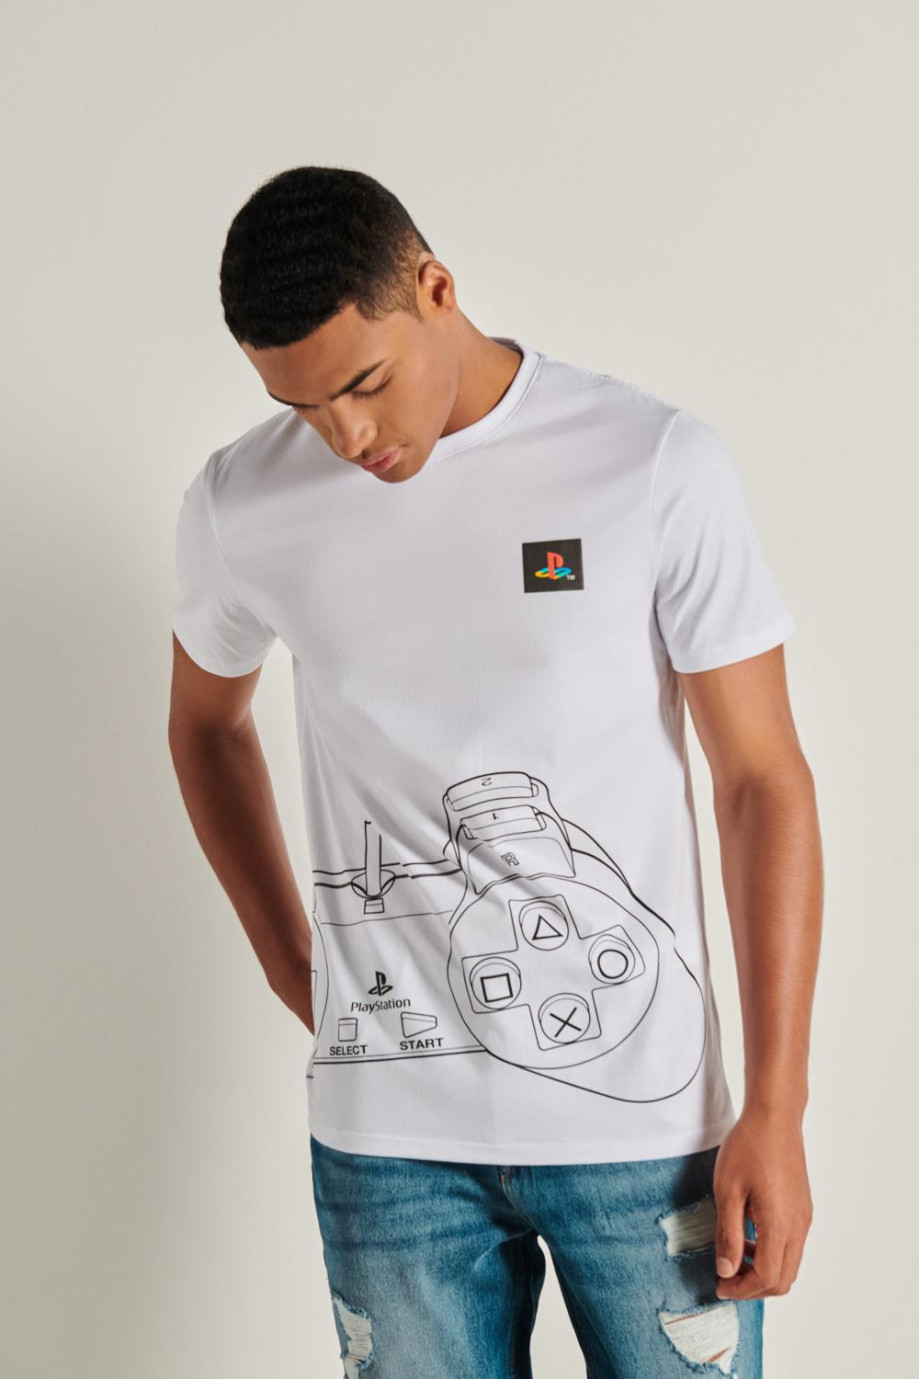 Camiseta blanca con diseño de PlayStation y manga corta